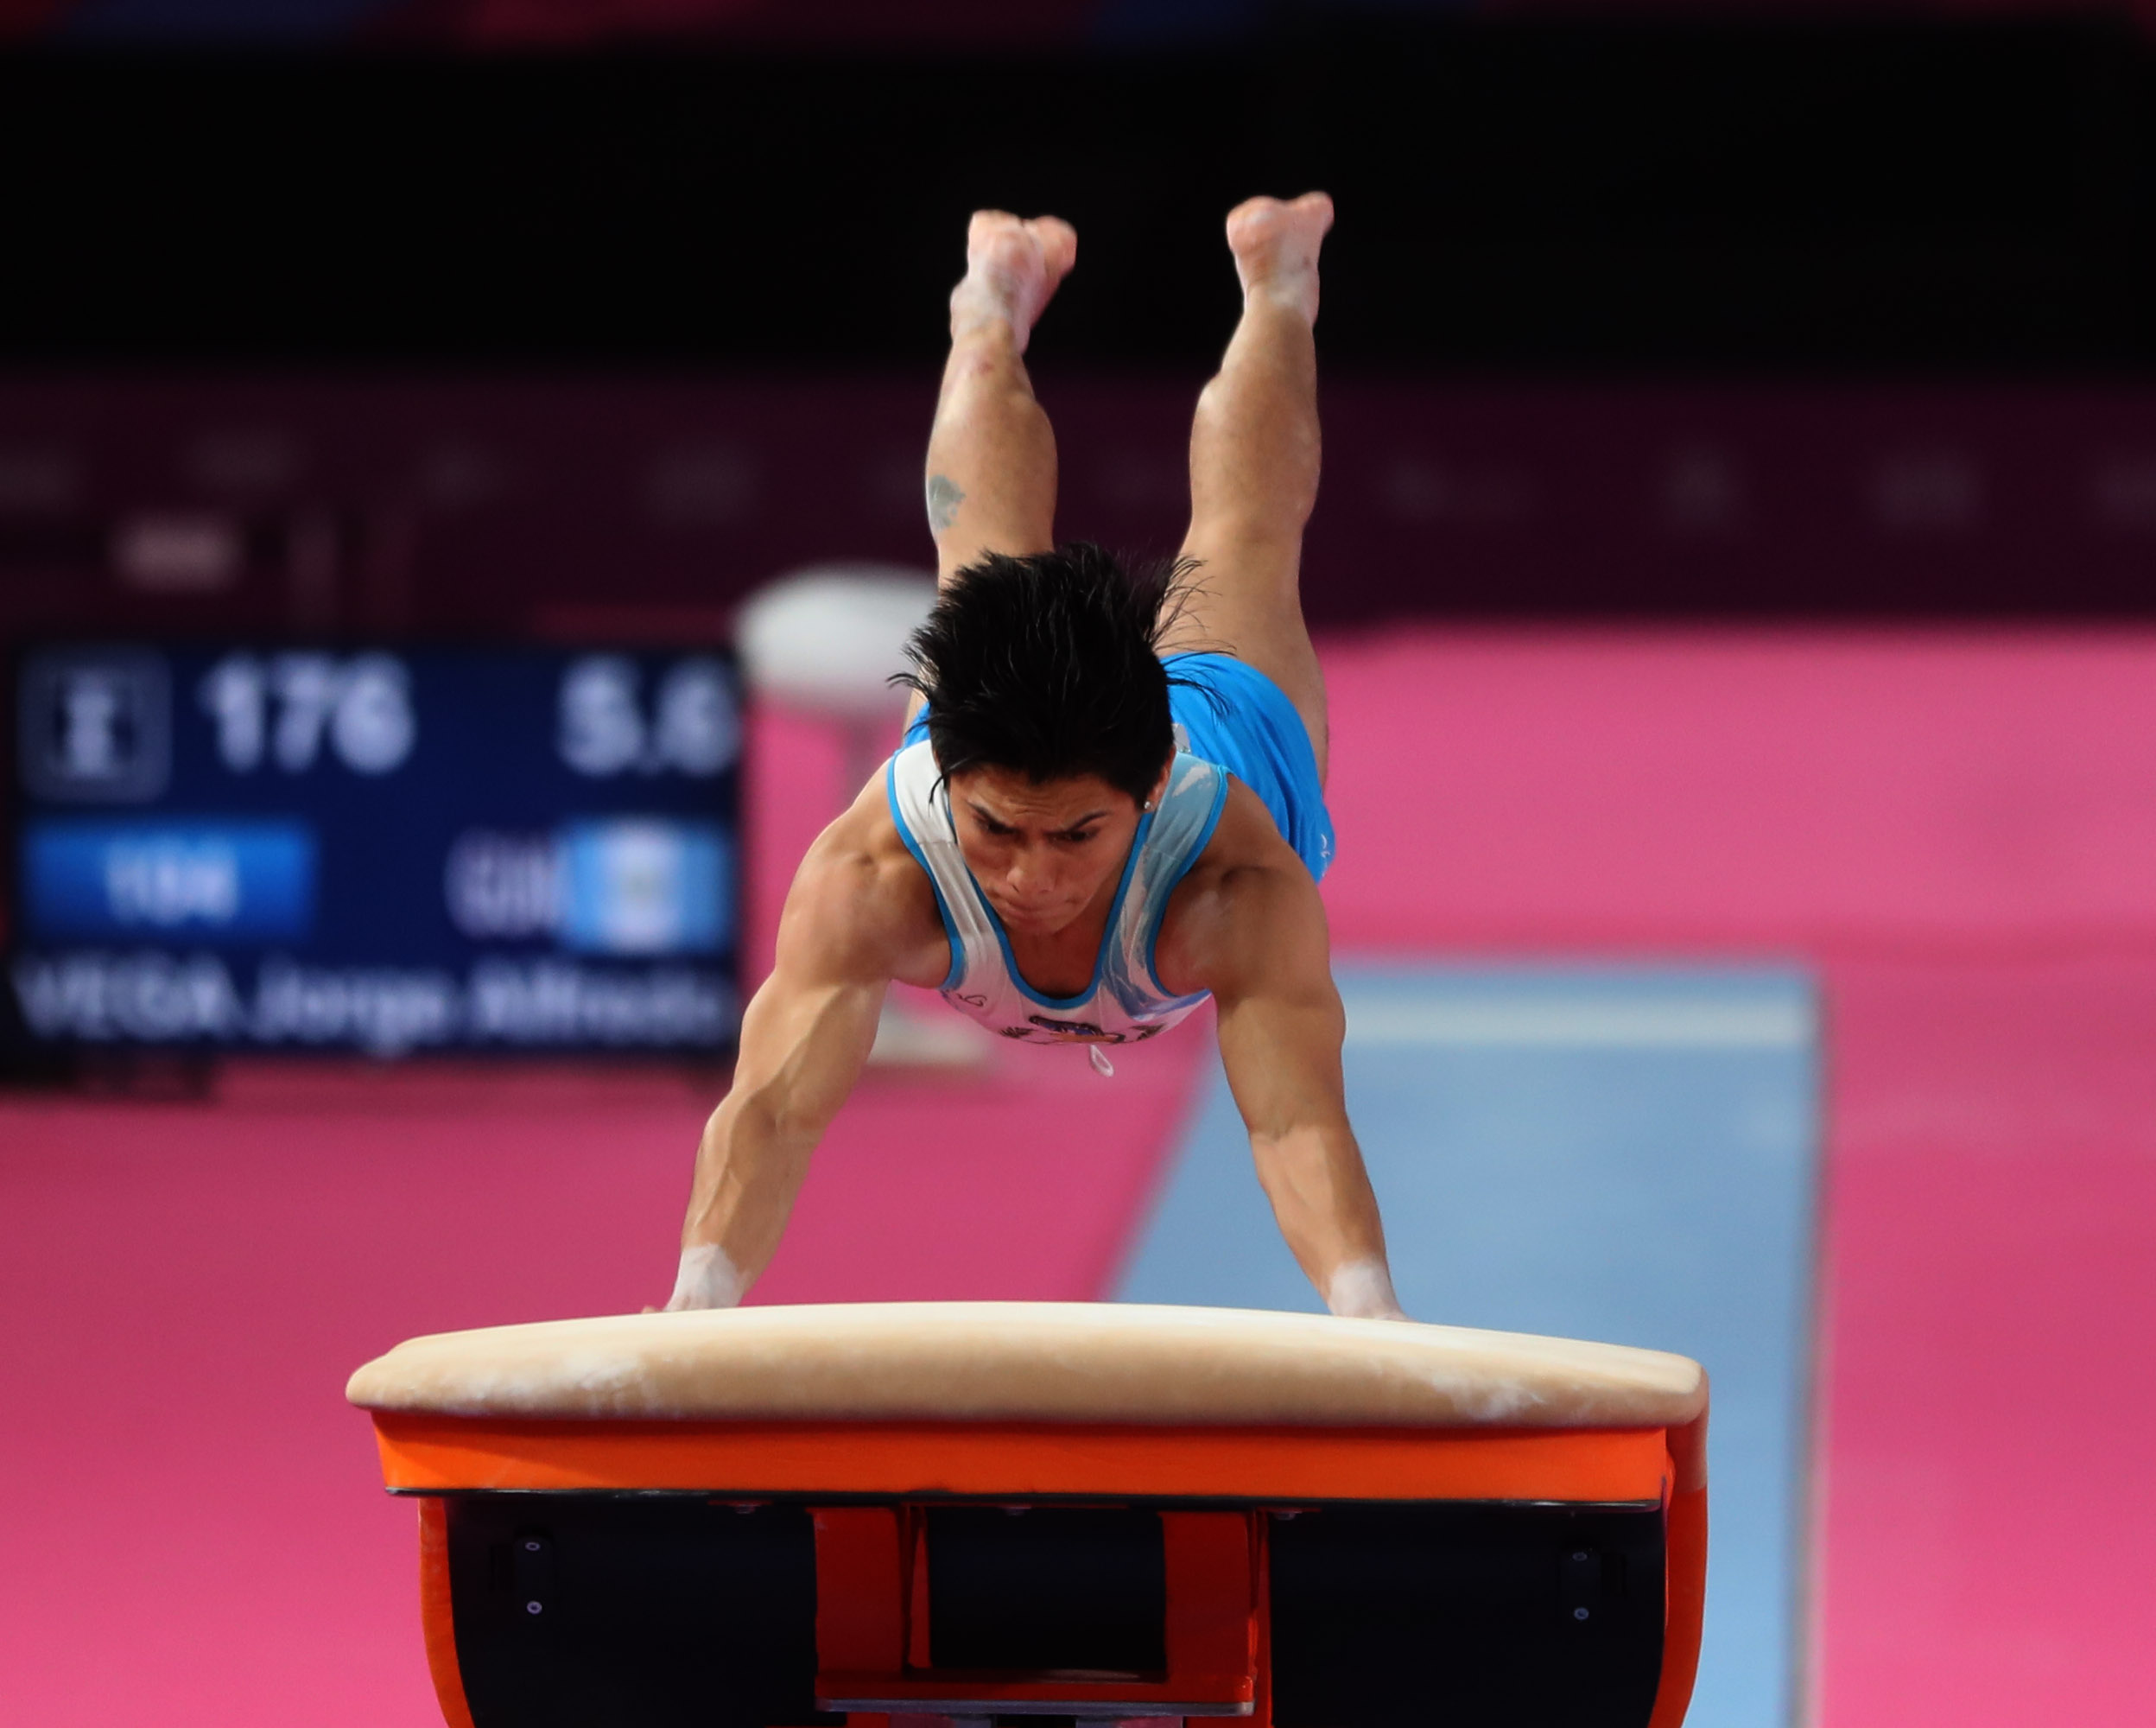 Jorge Vega es el subcampeón mundial en salto al potro. (Foto Prensa Libre: Hemeroteca)